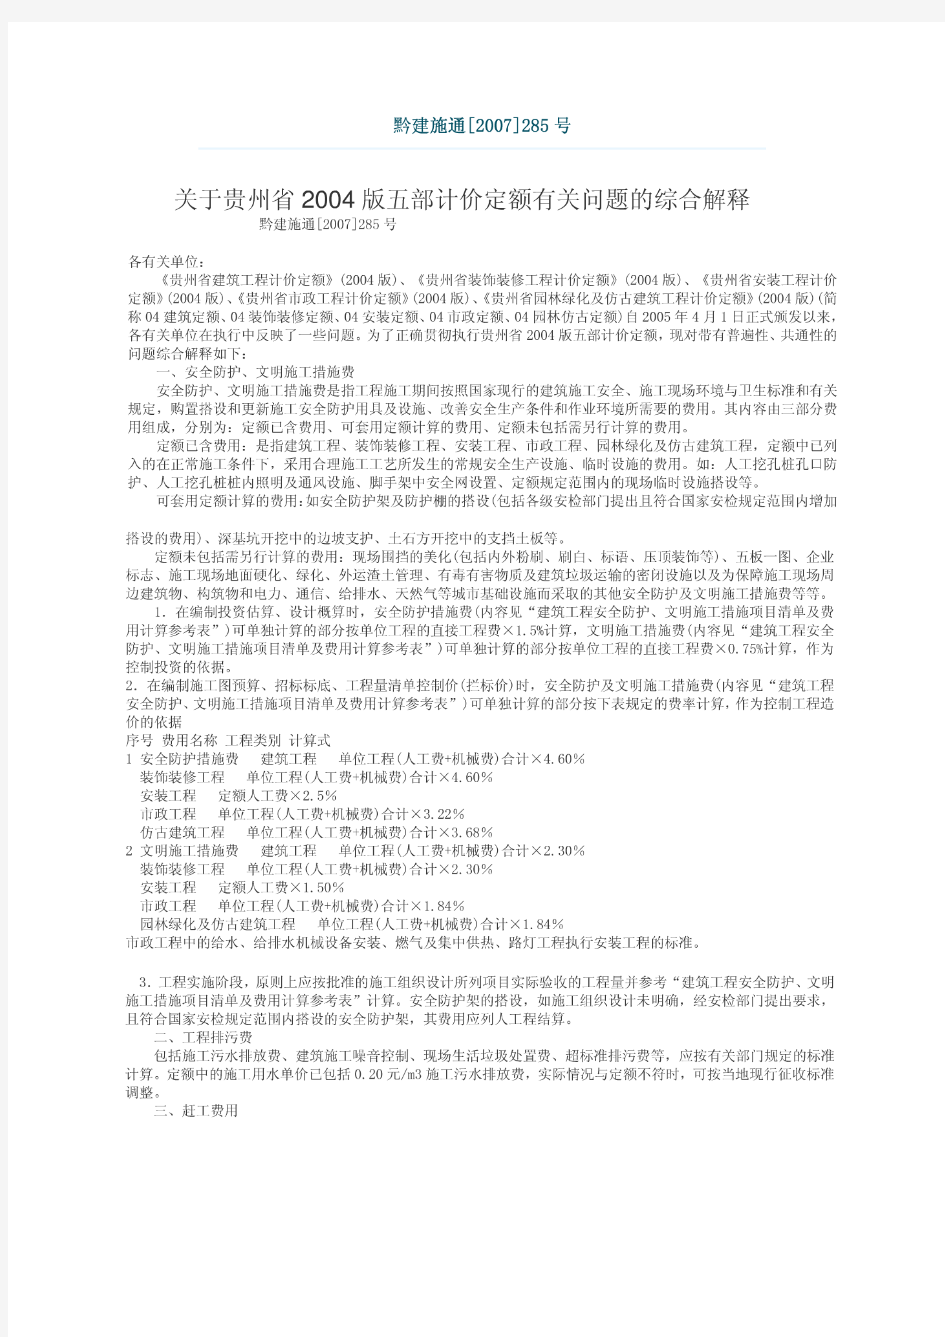 关于贵州省2004版五部计价定额有关问题的综合解释 (黔建施通2007 285号)